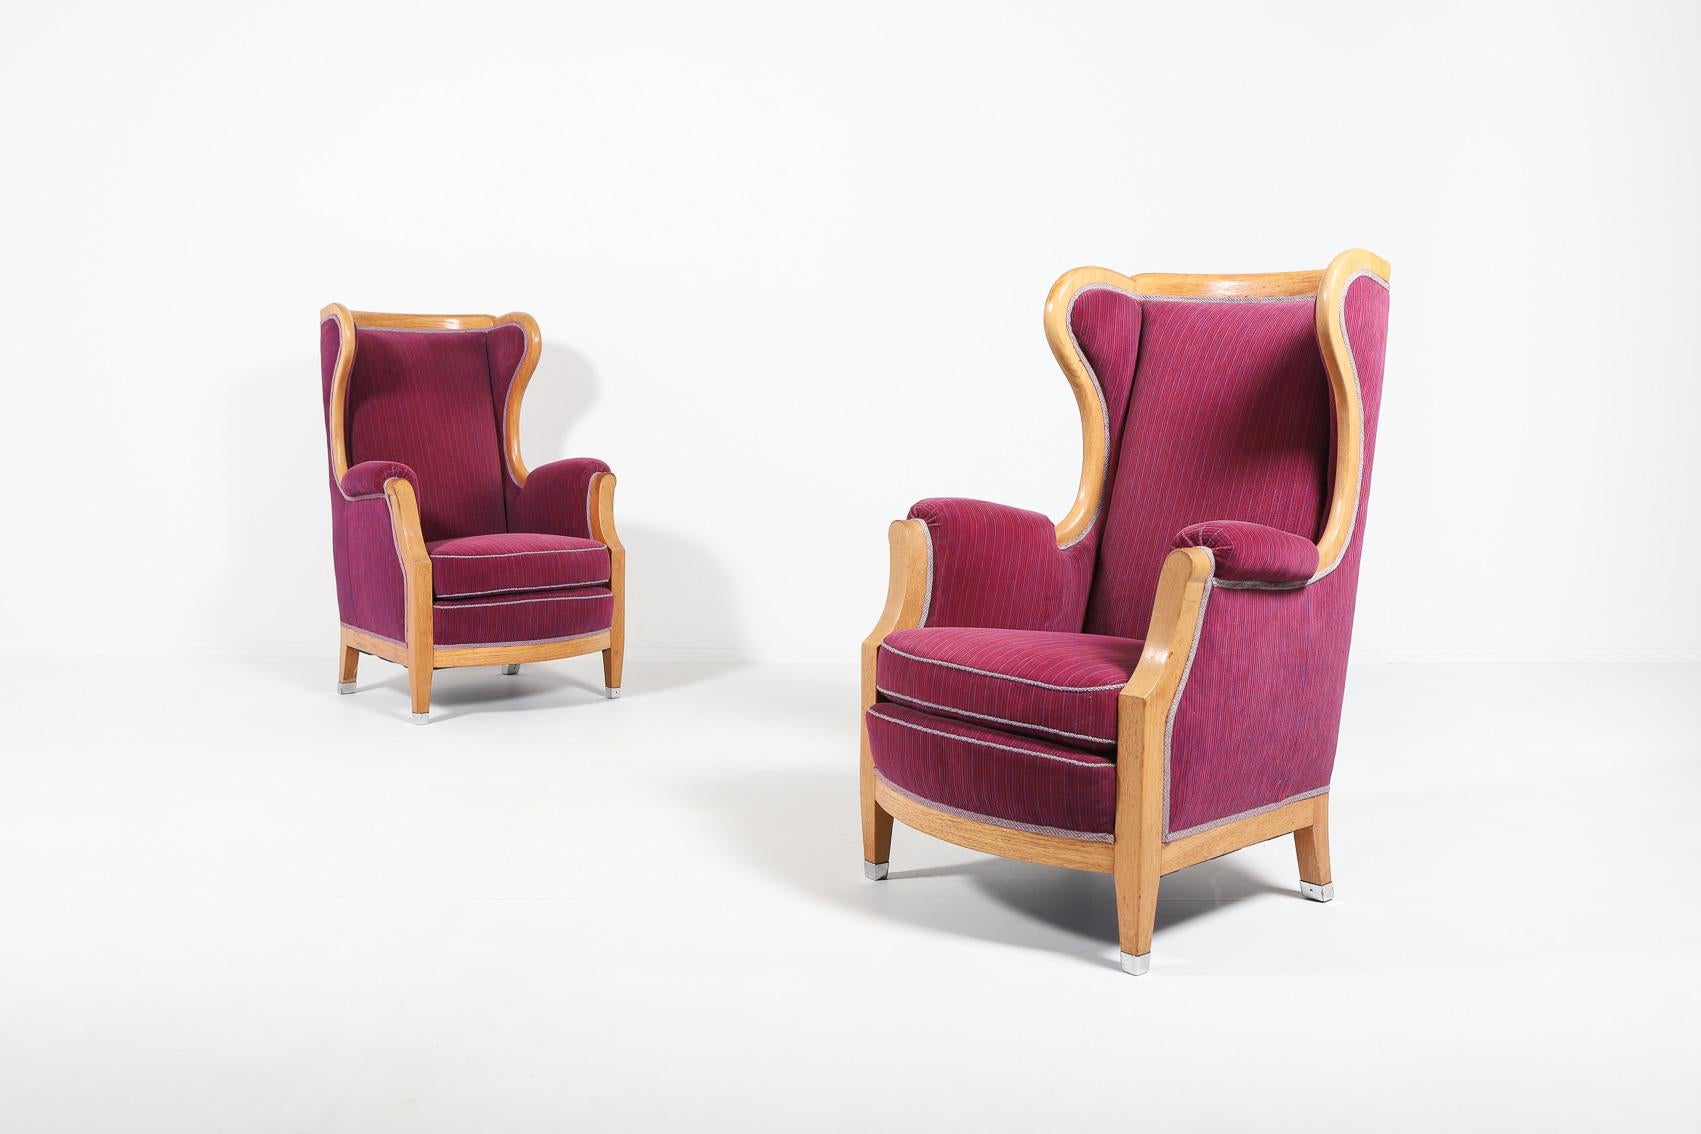 Paar 2 spektakuläre Loungesessel mit lackiertem Eichengestell und rosa-violett gestreiften Stoffbezügen, lose Sitzkissen. Eine Meisterleistung des schwedischen Architekten Oscar Nilsson, aristokratisch und elegant zugleich.

Der Preis gilt für ein